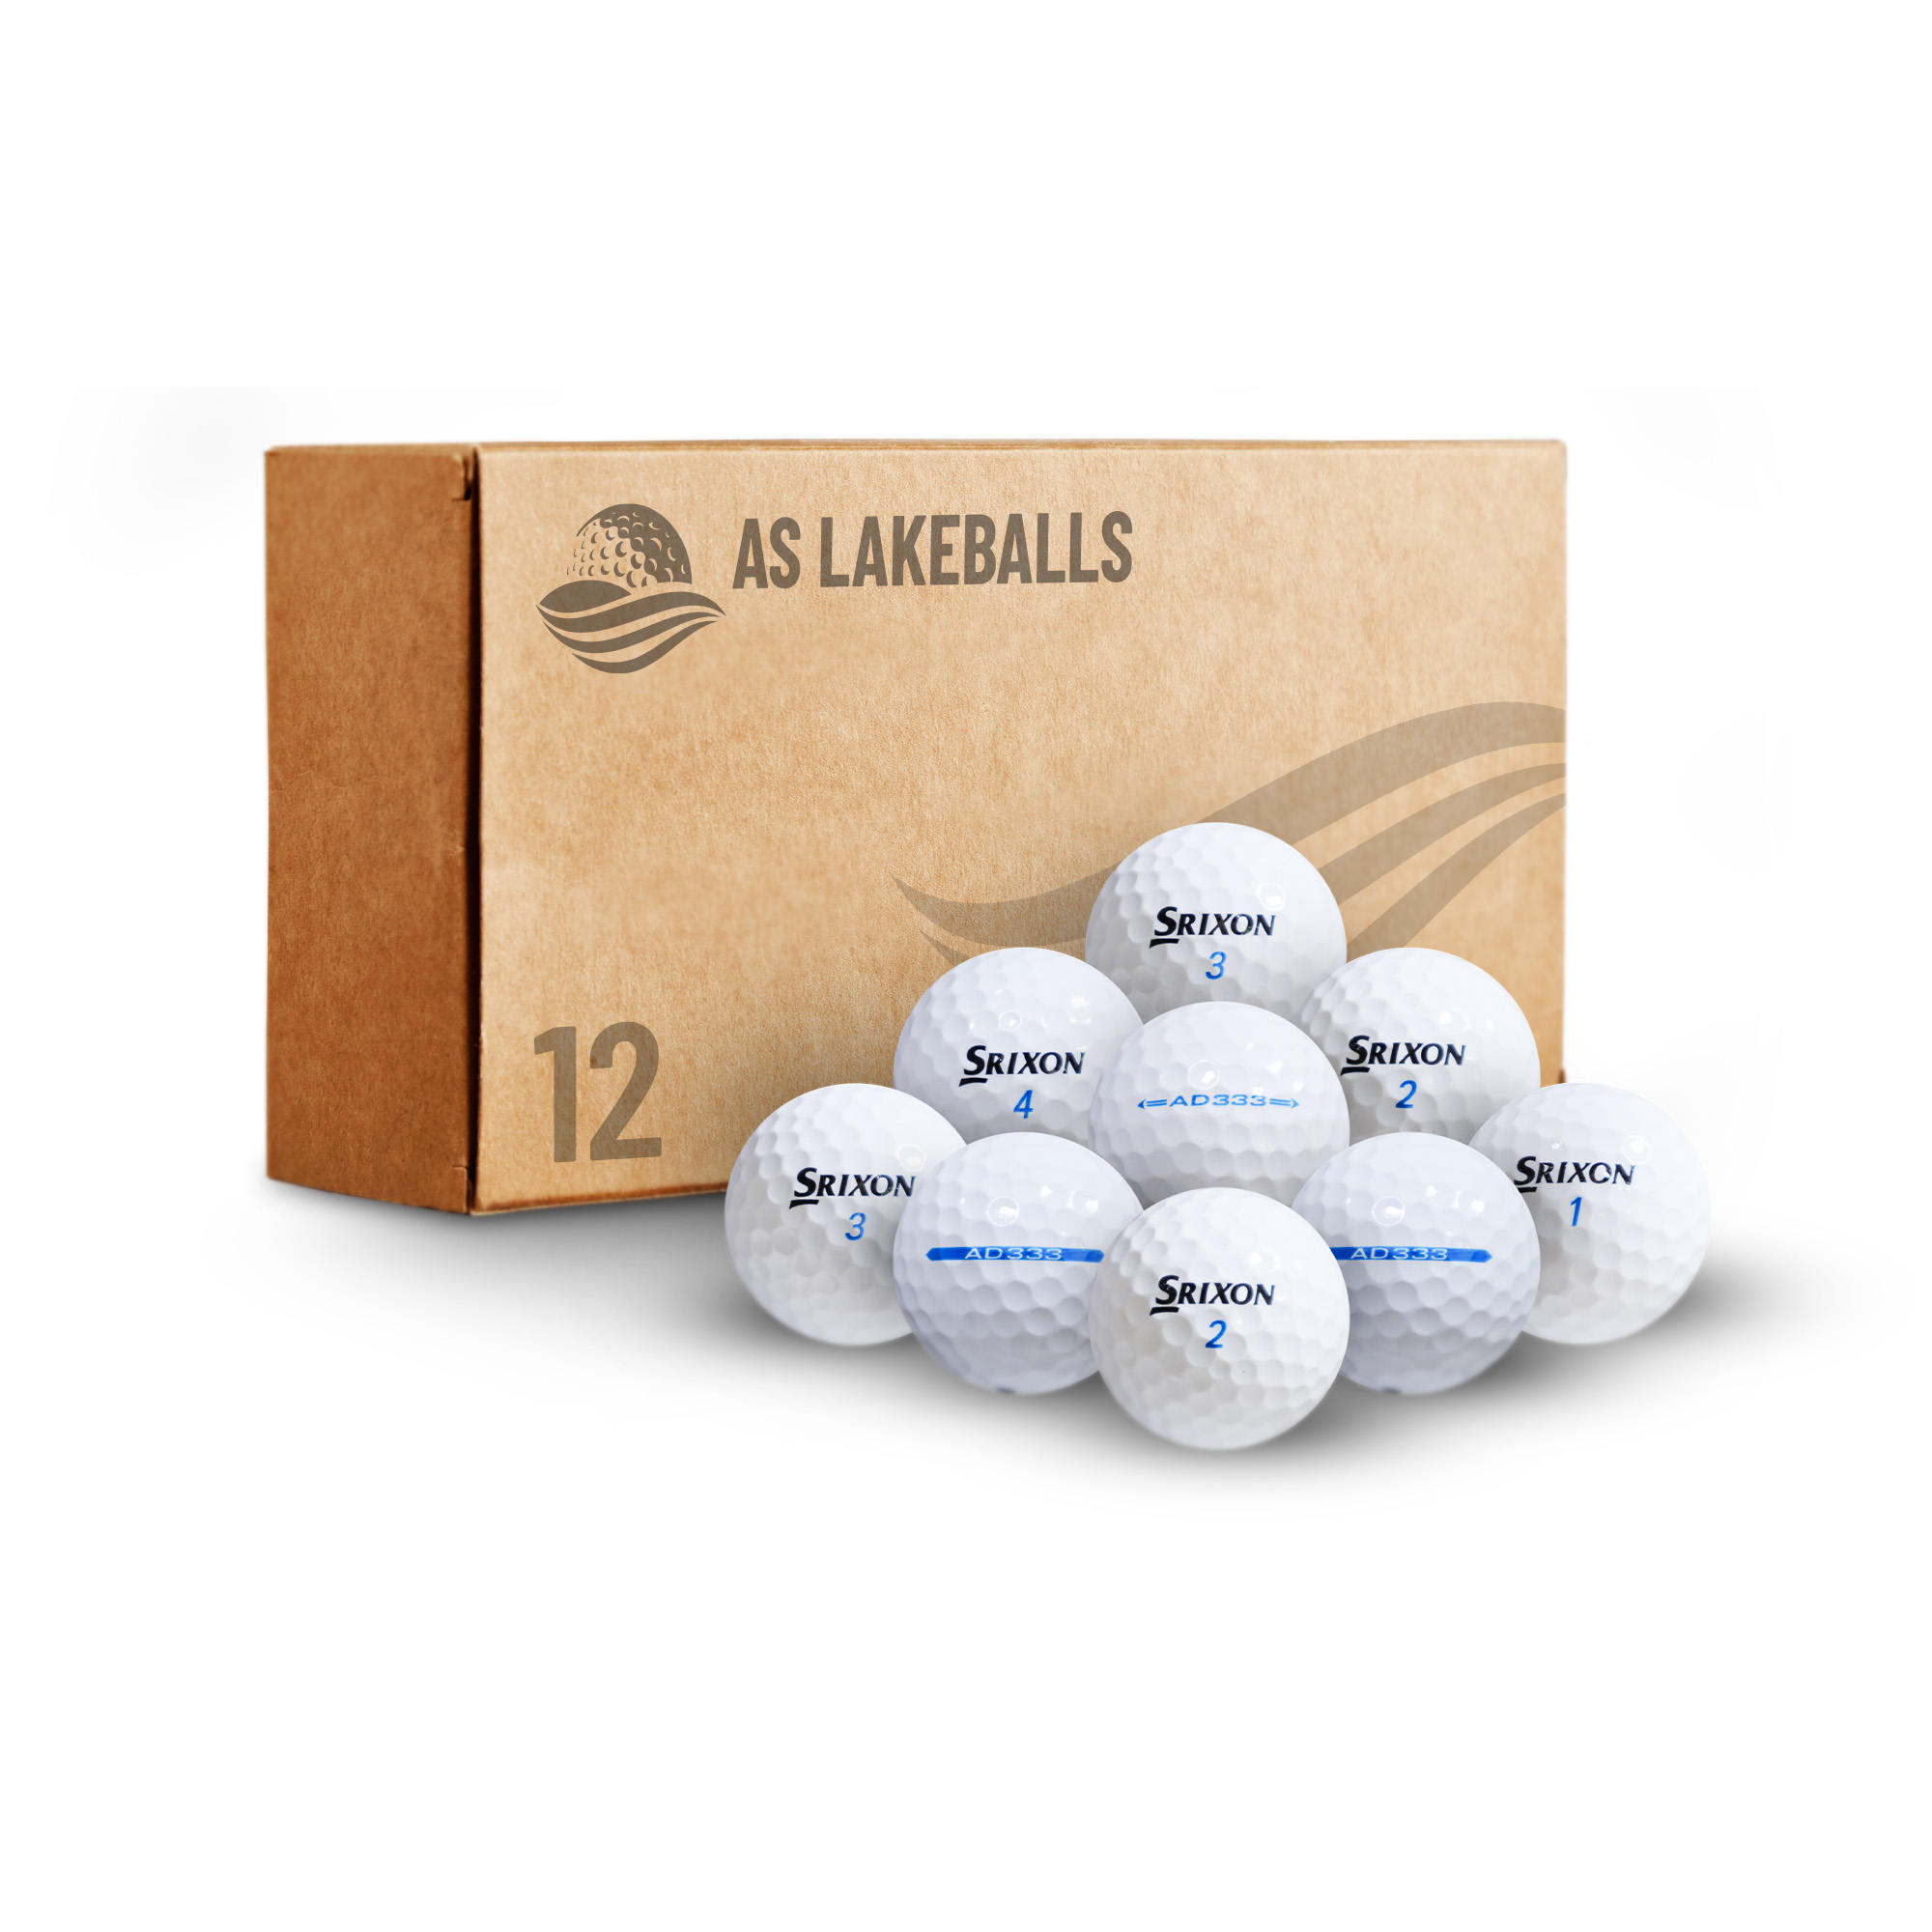 12 Stück Srixon AD 333 AA Lakeballs bei AS Lakeballs günstig kaufen